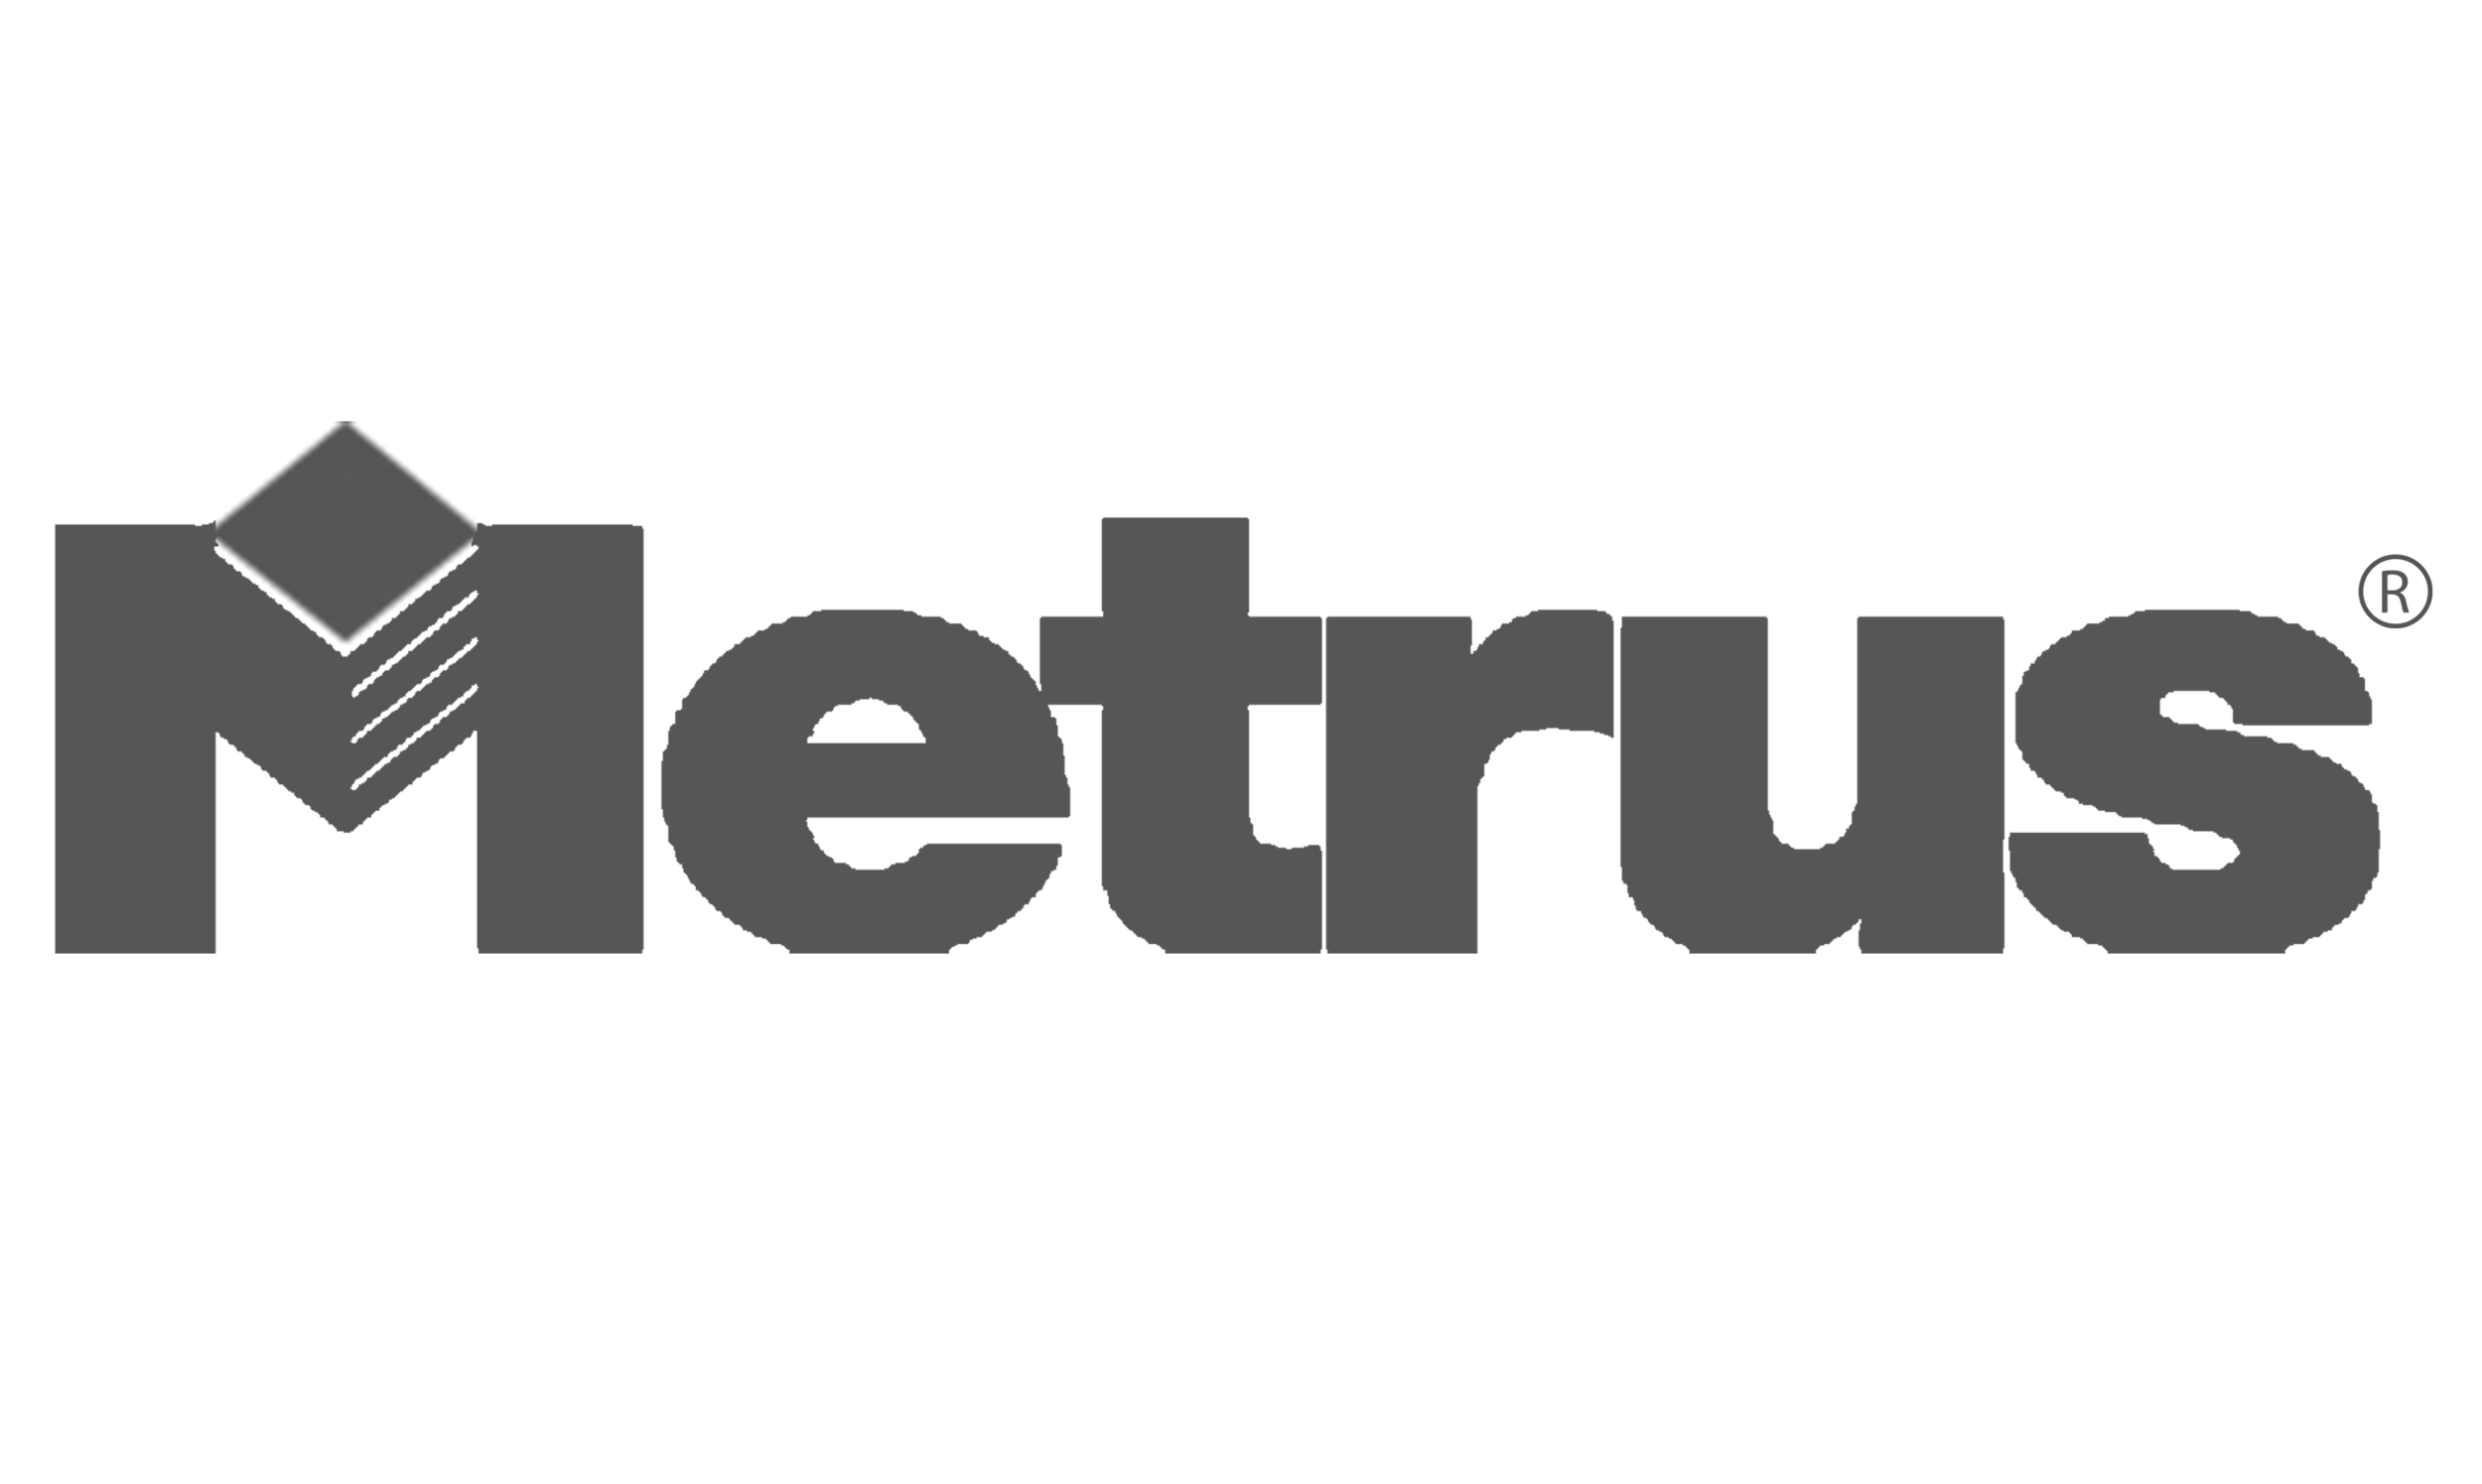 Metrus Logo .png